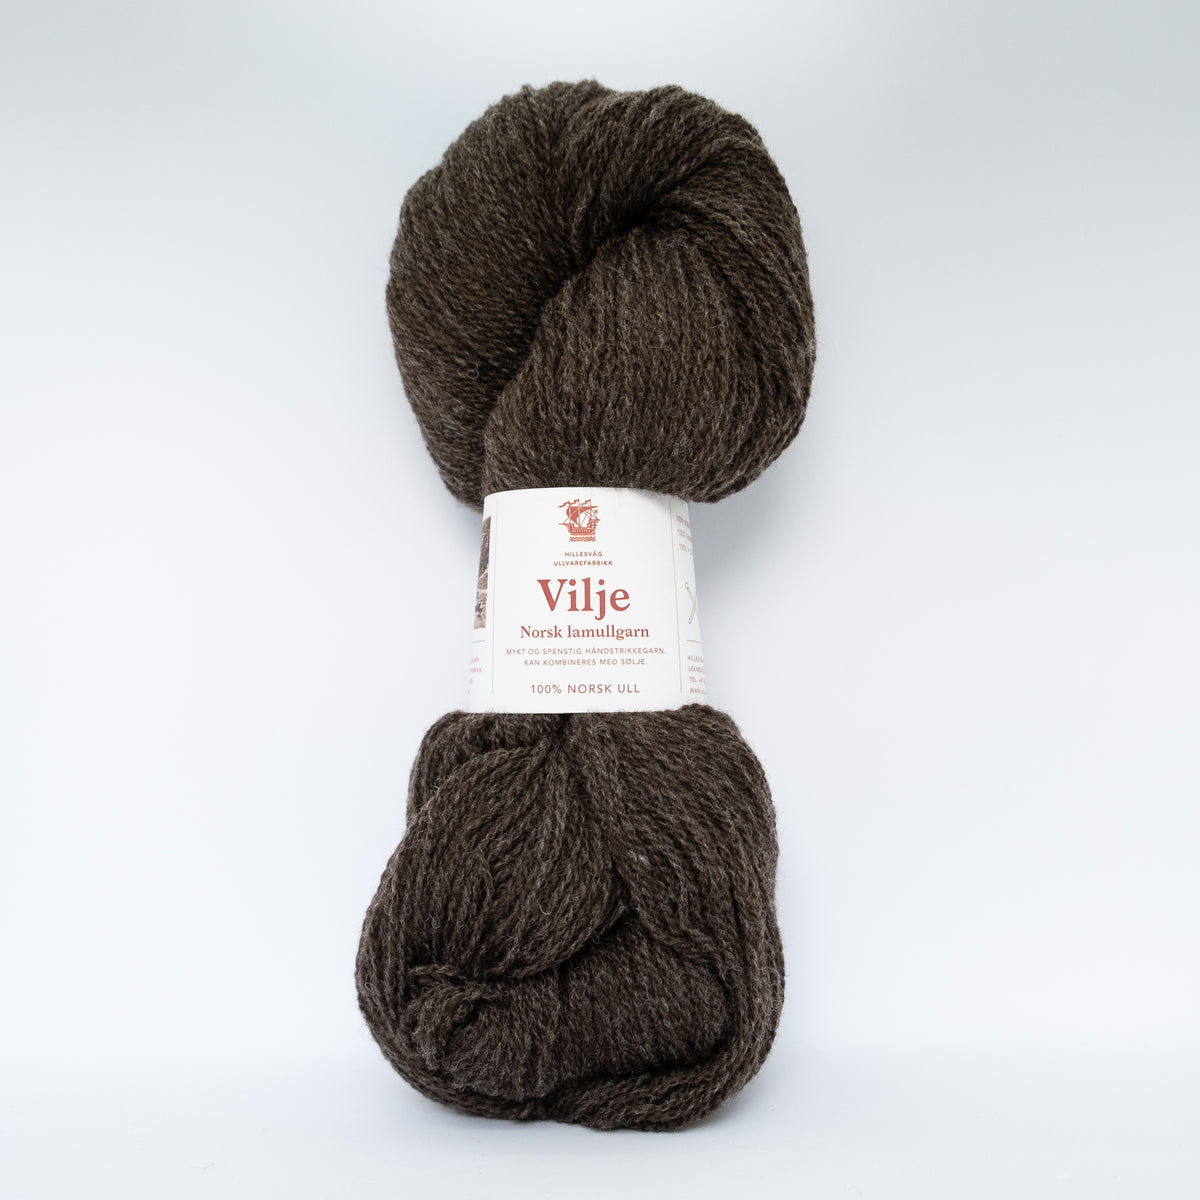 Vilje - mingled dark brown